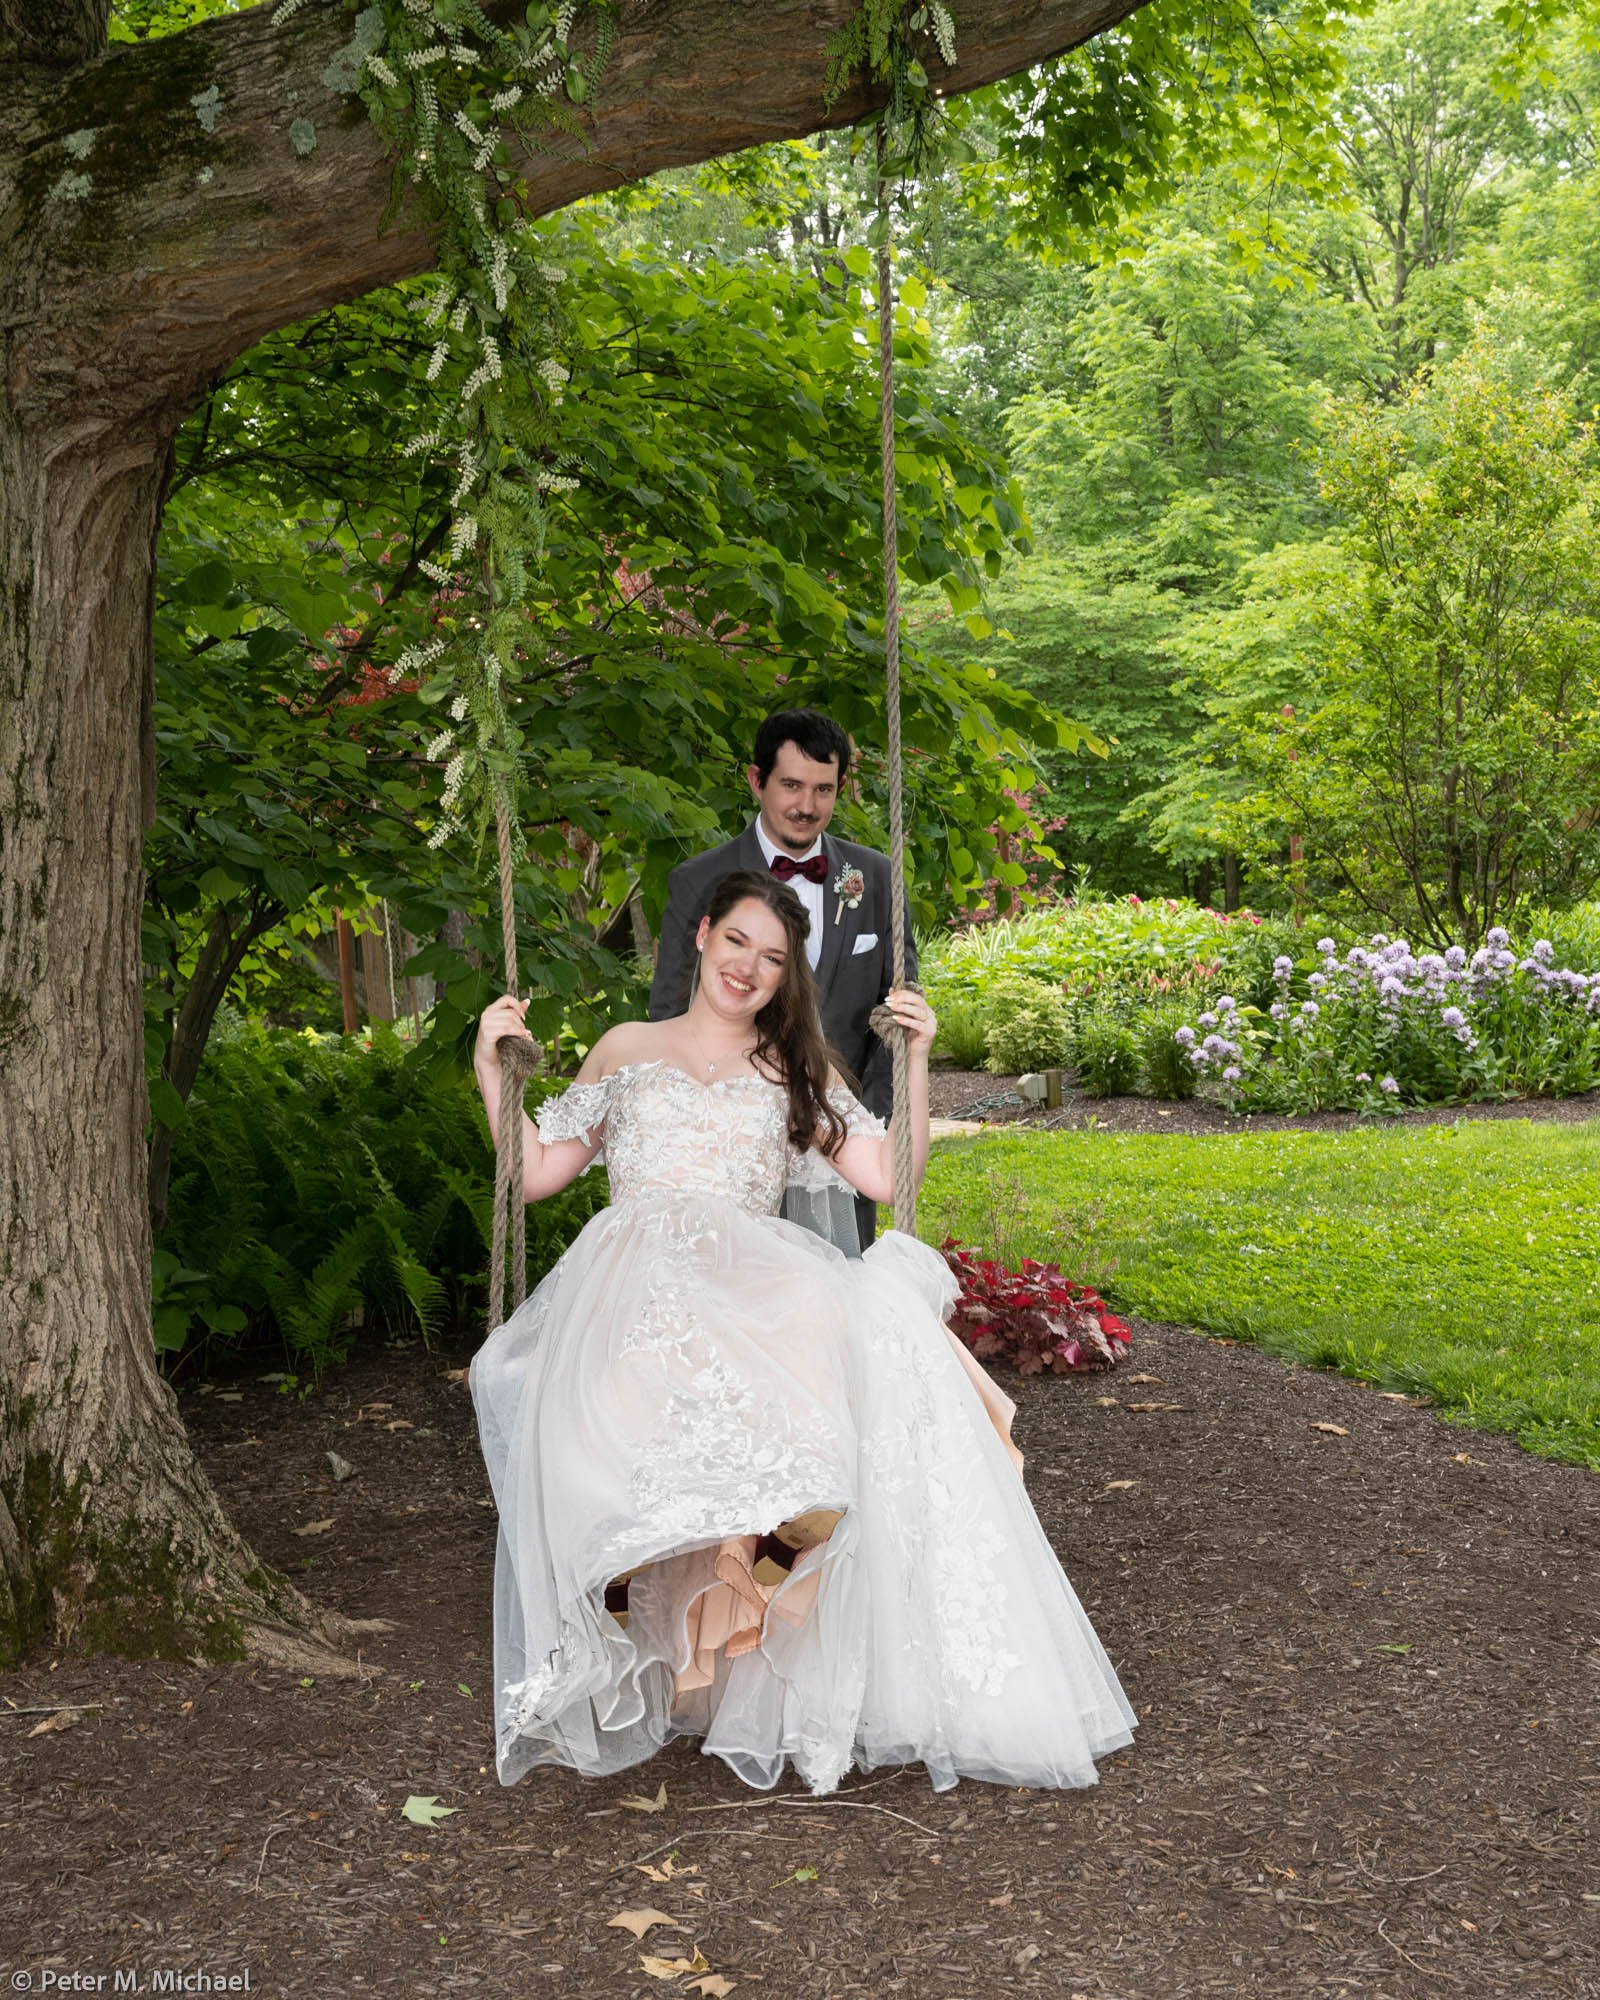 groom pushing bride on swing